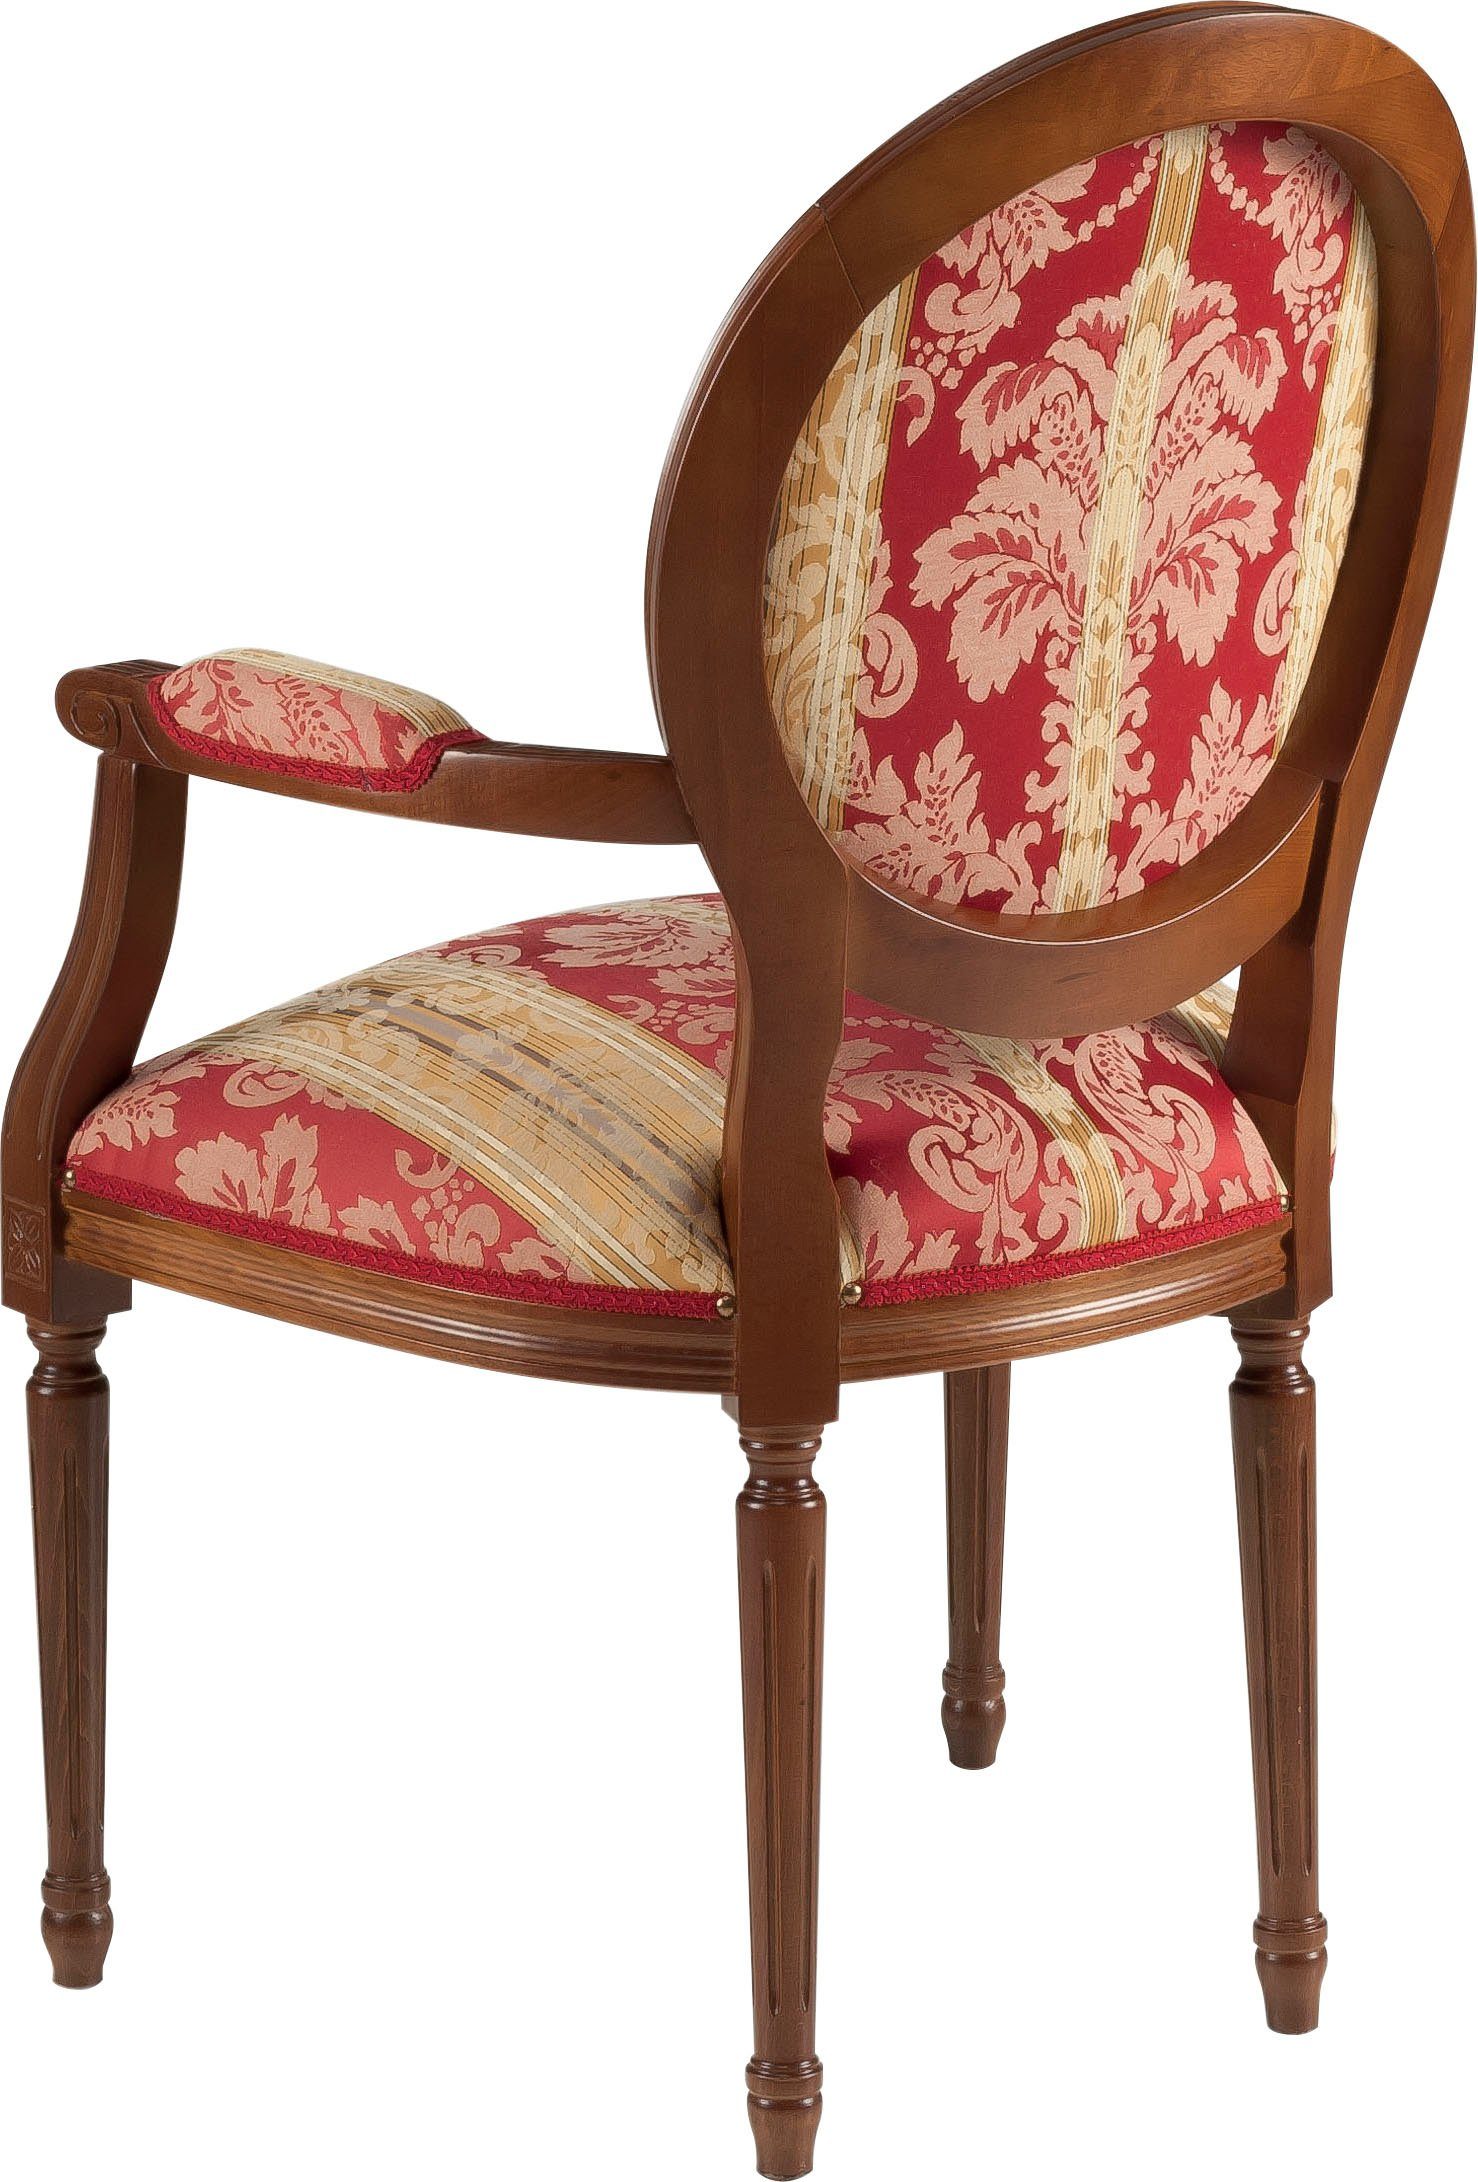 DELAVITA Armlehnstuhl »Stühle Valentina« (1 Stück), Breite 60 cm-kaufen